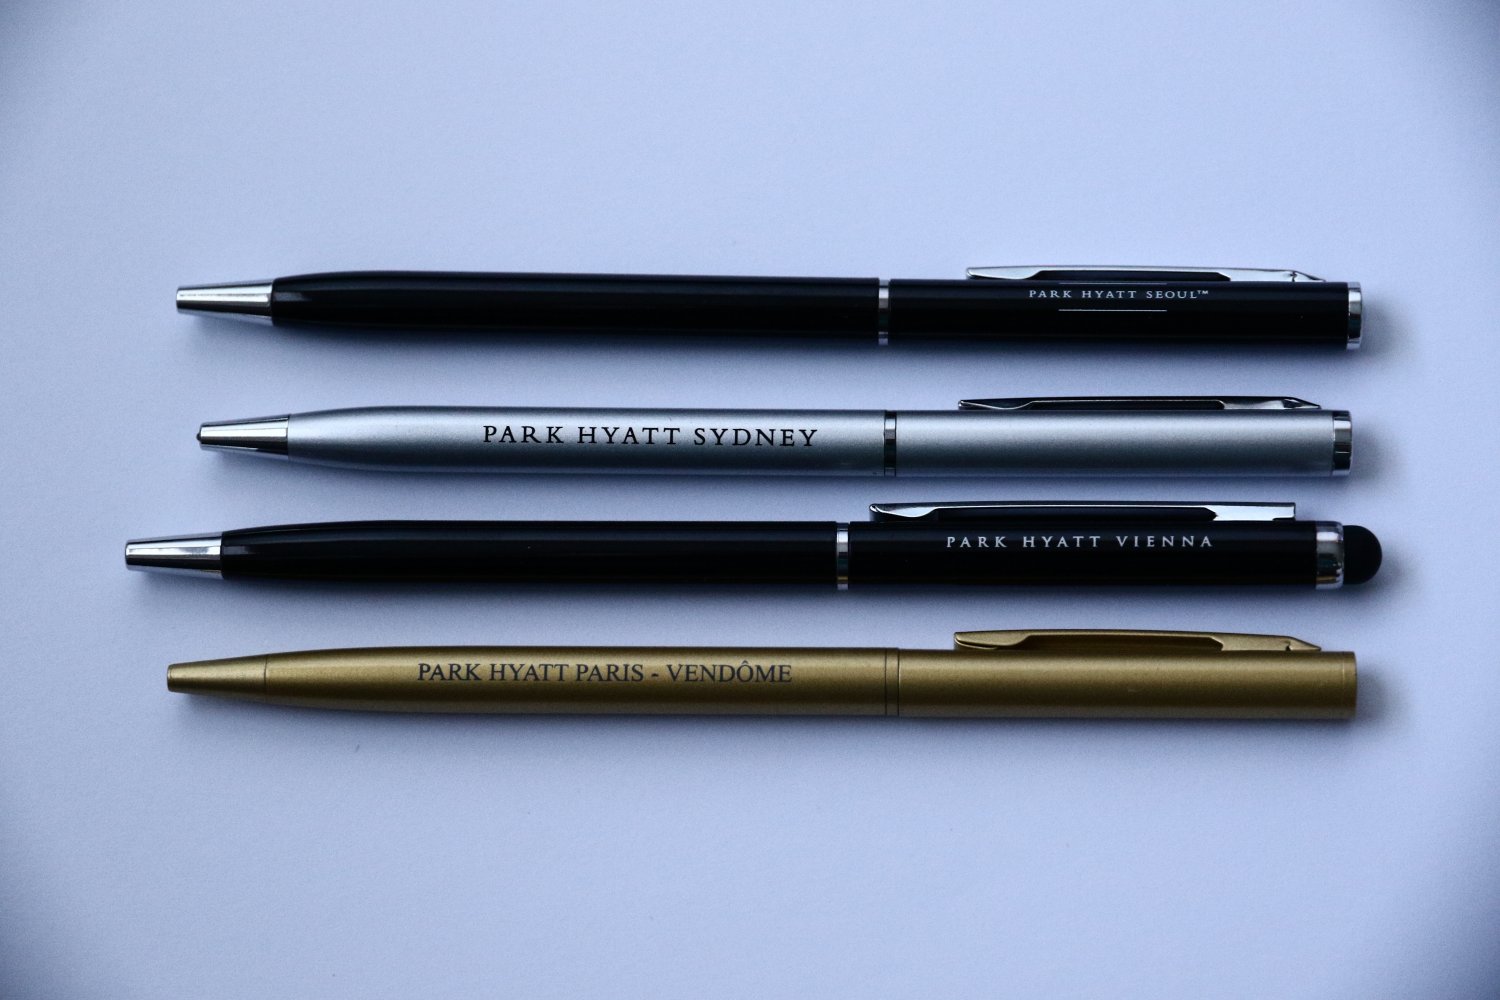 4 Park Hyatt Hotel Pens: Sydney Vienna Paris Seoul Collection Pen Lot Set